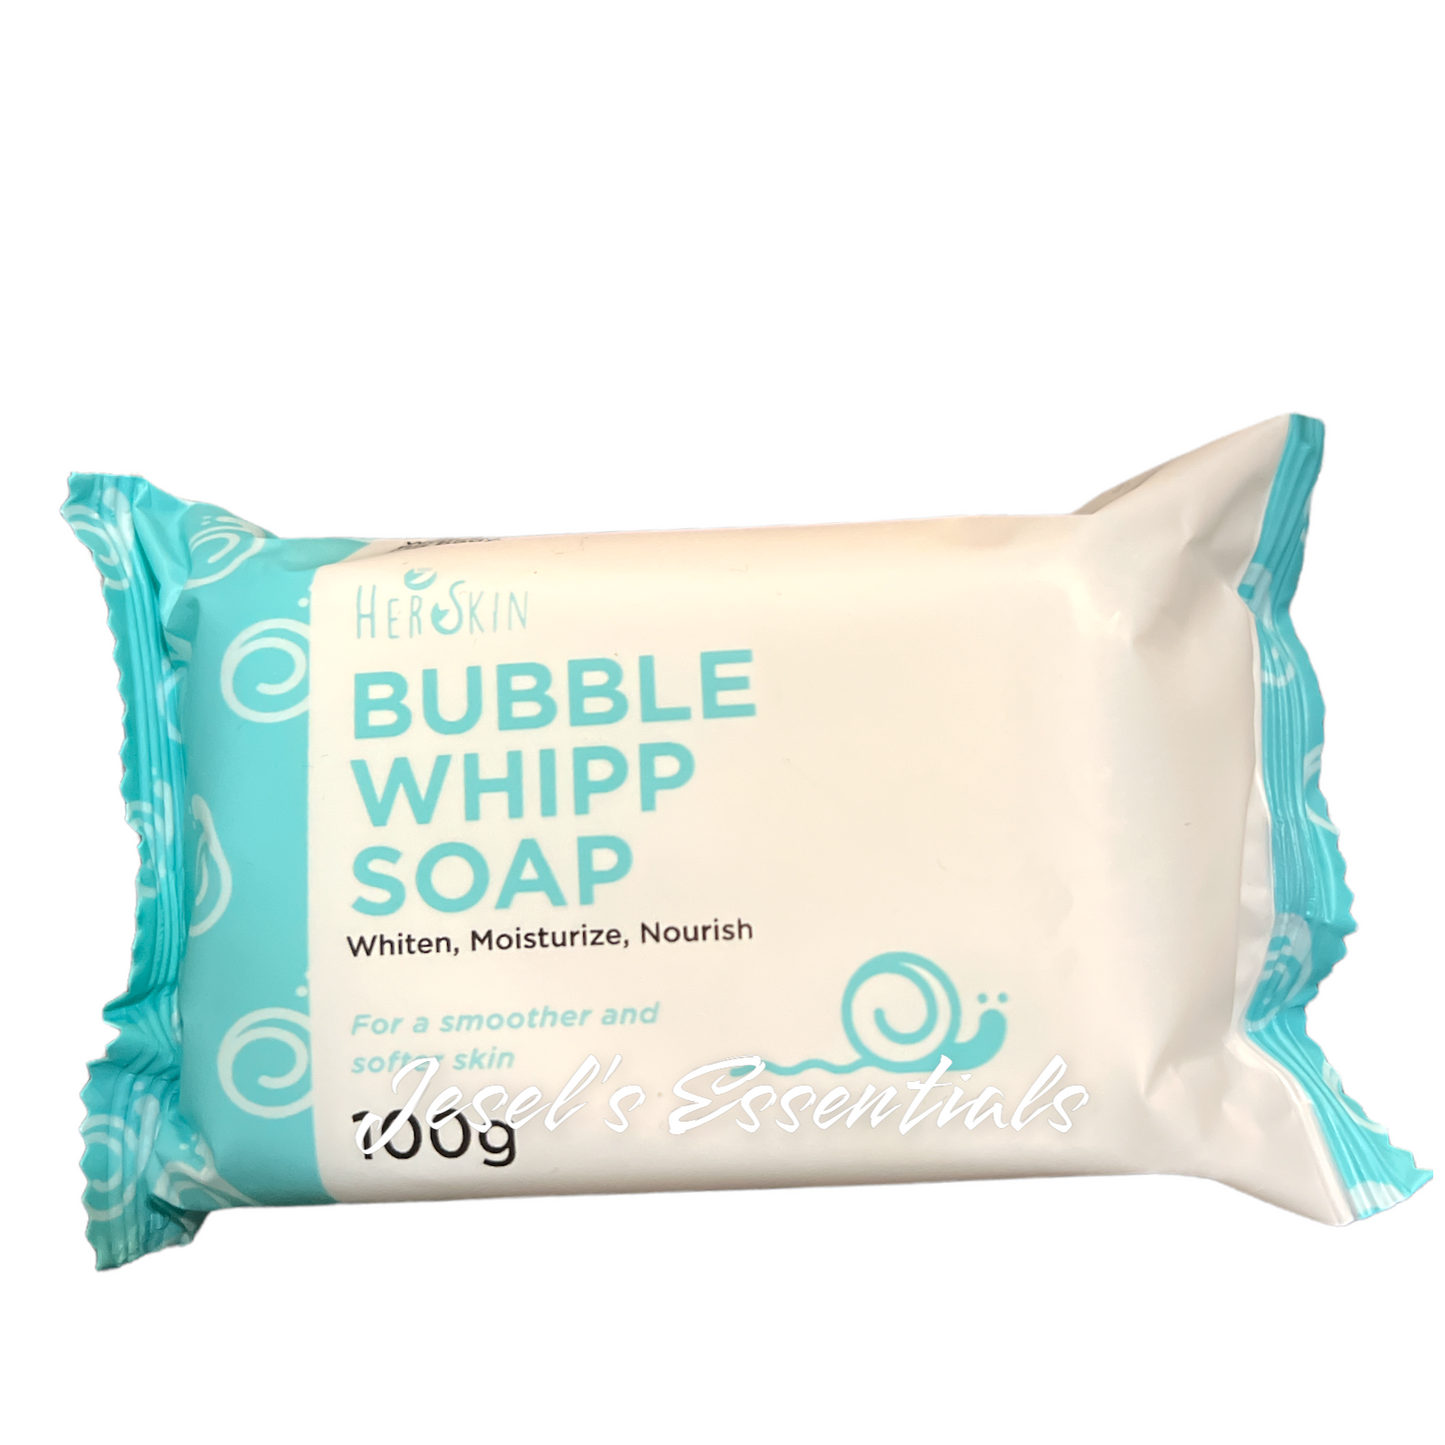 Herskin Bubble Whipp Soap 100g